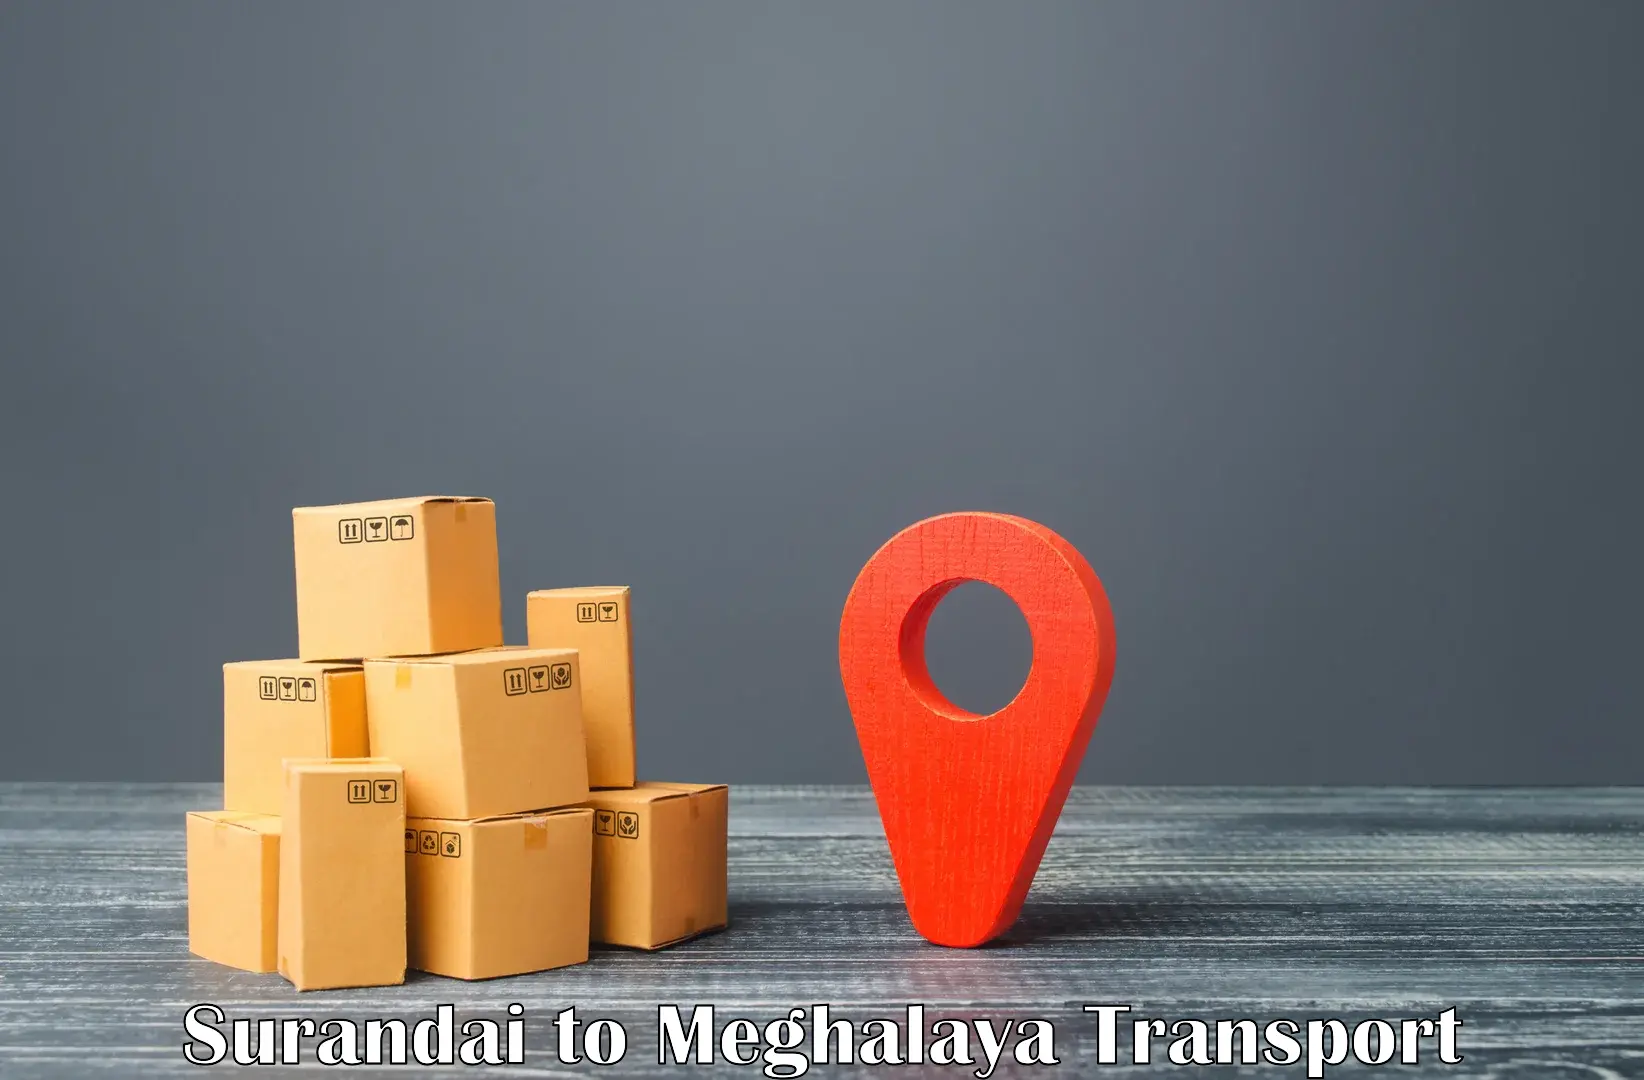 Nearest transport service Surandai to Meghalaya